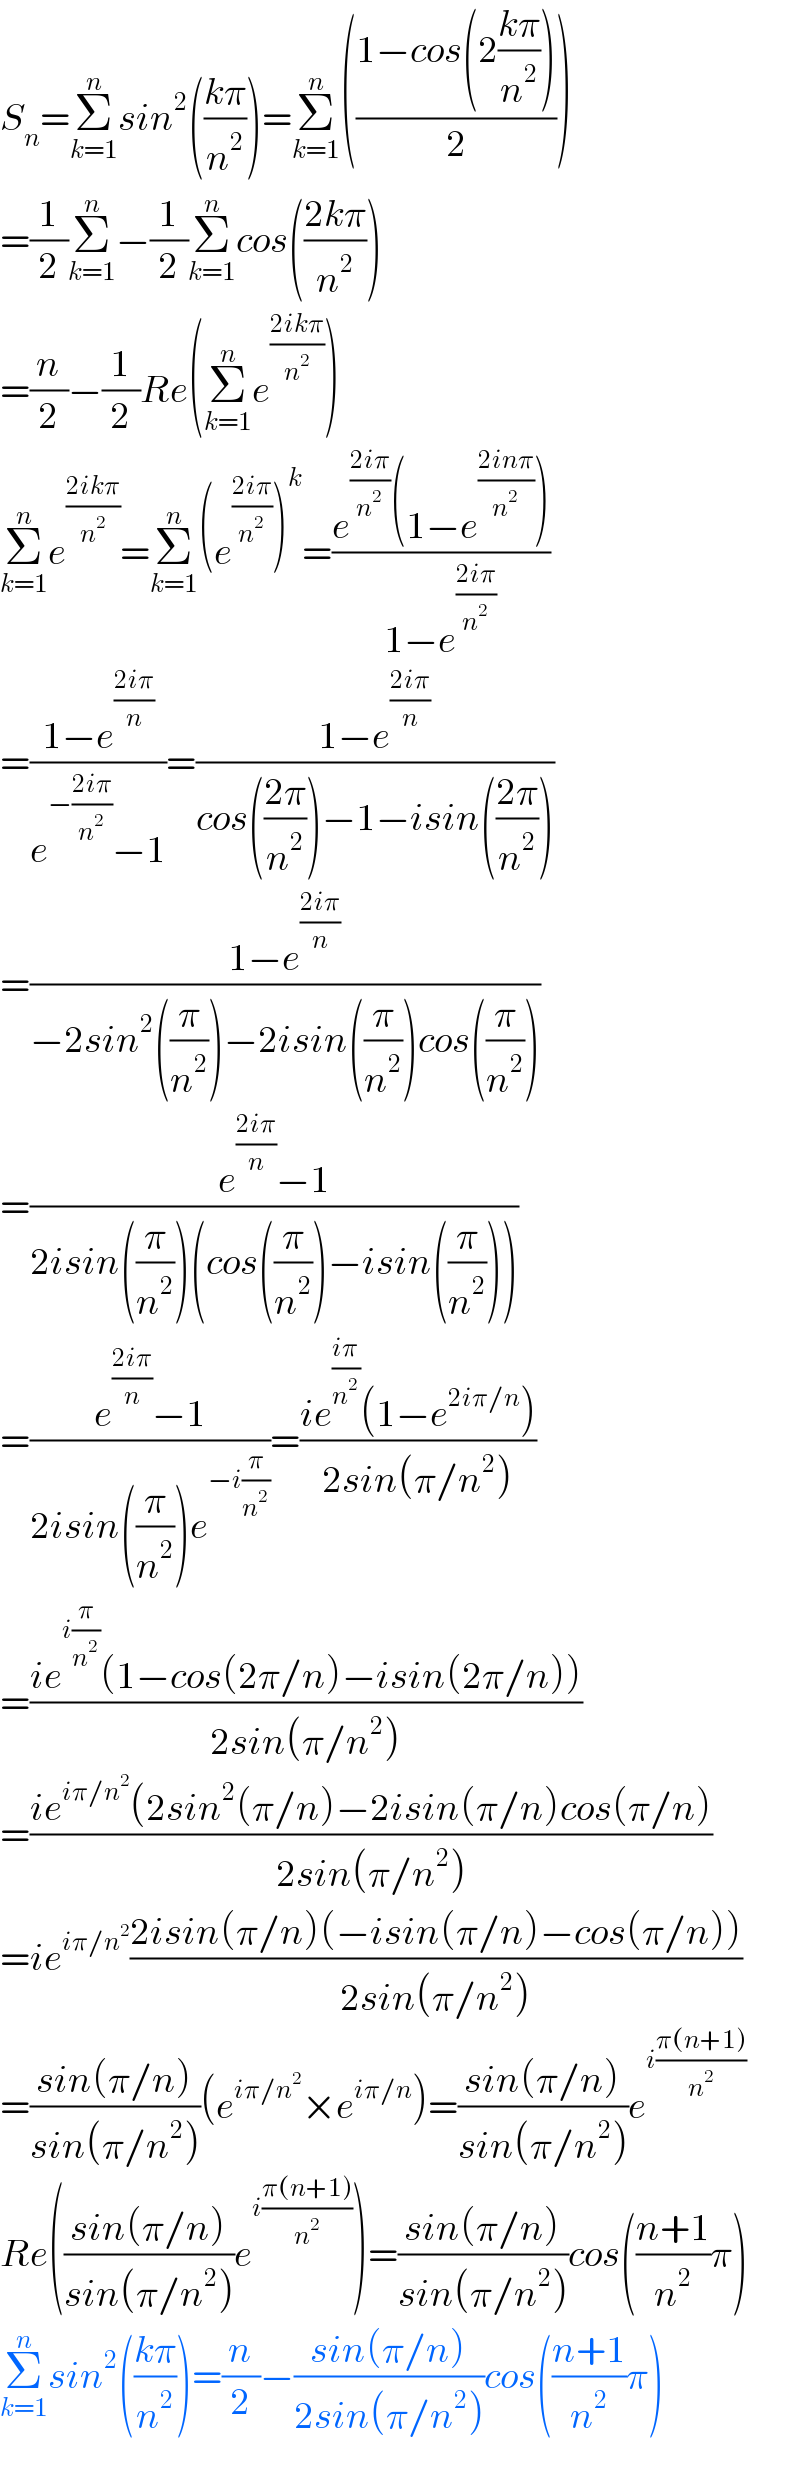 S_n =Σ_(k=1) ^n sin^2 (((kπ)/n^2 ))=Σ_(k=1) ^n (((1−cos(2((kπ)/n^2 )))/2))  =(1/2)Σ_(k=1) ^n −(1/2)Σ_(k=1) ^n cos(((2kπ)/n^2 ))  =(n/2)−(1/2)Re(Σ_(k=1) ^n e^((2ikπ)/n^2 ) )  Σ_(k=1) ^n e^((2ikπ)/n^2 ) =Σ_(k=1) ^n (e^((2iπ)/n^2 ) )^k =((e^((2iπ)/n^2 ) (1−e^((2inπ)/n^2 ) ))/(1−e^((2iπ)/n^2 ) ))  =((1−e^((2iπ)/n) )/(e^(−((2iπ)/n^2 )) −1))=((1−e^((2iπ)/n) )/(cos(((2π)/n^2 ))−1−isin(((2π)/n^2 ))))  =((1−e^((2iπ)/n) )/(−2sin^2 ((π/n^2 ))−2isin((π/n^2 ))cos((π/n^2 ))))  =((e^((2iπ)/n) −1)/(2isin((π/n^2 ))(cos((π/n^2 ))−isin((π/n^2 )))))  =((e^((2iπ)/n) −1)/(2isin((π/n^2 ))e^(−i(π/n^2 )) ))=((ie^((iπ)/n^2 ) (1−e^(2iπ/n) ))/(2sin(π/n^2 )))  =((ie^(i(π/n^2 )) (1−cos(2π/n)−isin(2π/n)))/(2sin(π/n^2 )))  =((ie^(iπ/n^2 ) (2sin^2 (π/n)−2isin(π/n)cos(π/n))/(2sin(π/n^2 )))  =ie^(iπ/n^2 ) ((2isin(π/n)(−isin(π/n)−cos(π/n)))/(2sin(π/n^2 )))  =((sin(π/n))/(sin(π/n^2 )))(e^(iπ/n^2 ) ×e^(iπ/n) )=((sin(π/n))/(sin(π/n^2 )))e^(i((π(n+1))/n^2 ))   Re(((sin(π/n))/(sin(π/n^2 )))e^(i((π(n+1))/n^2 )) )=((sin(π/n))/(sin(π/n^2 )))cos(((n+1)/n^2 )π)  Σ_(k=1) ^n sin^2 (((kπ)/n^2 ))=(n/2)−((sin(π/n))/(2sin(π/n^2 )))cos(((n+1)/n^2 )π)  